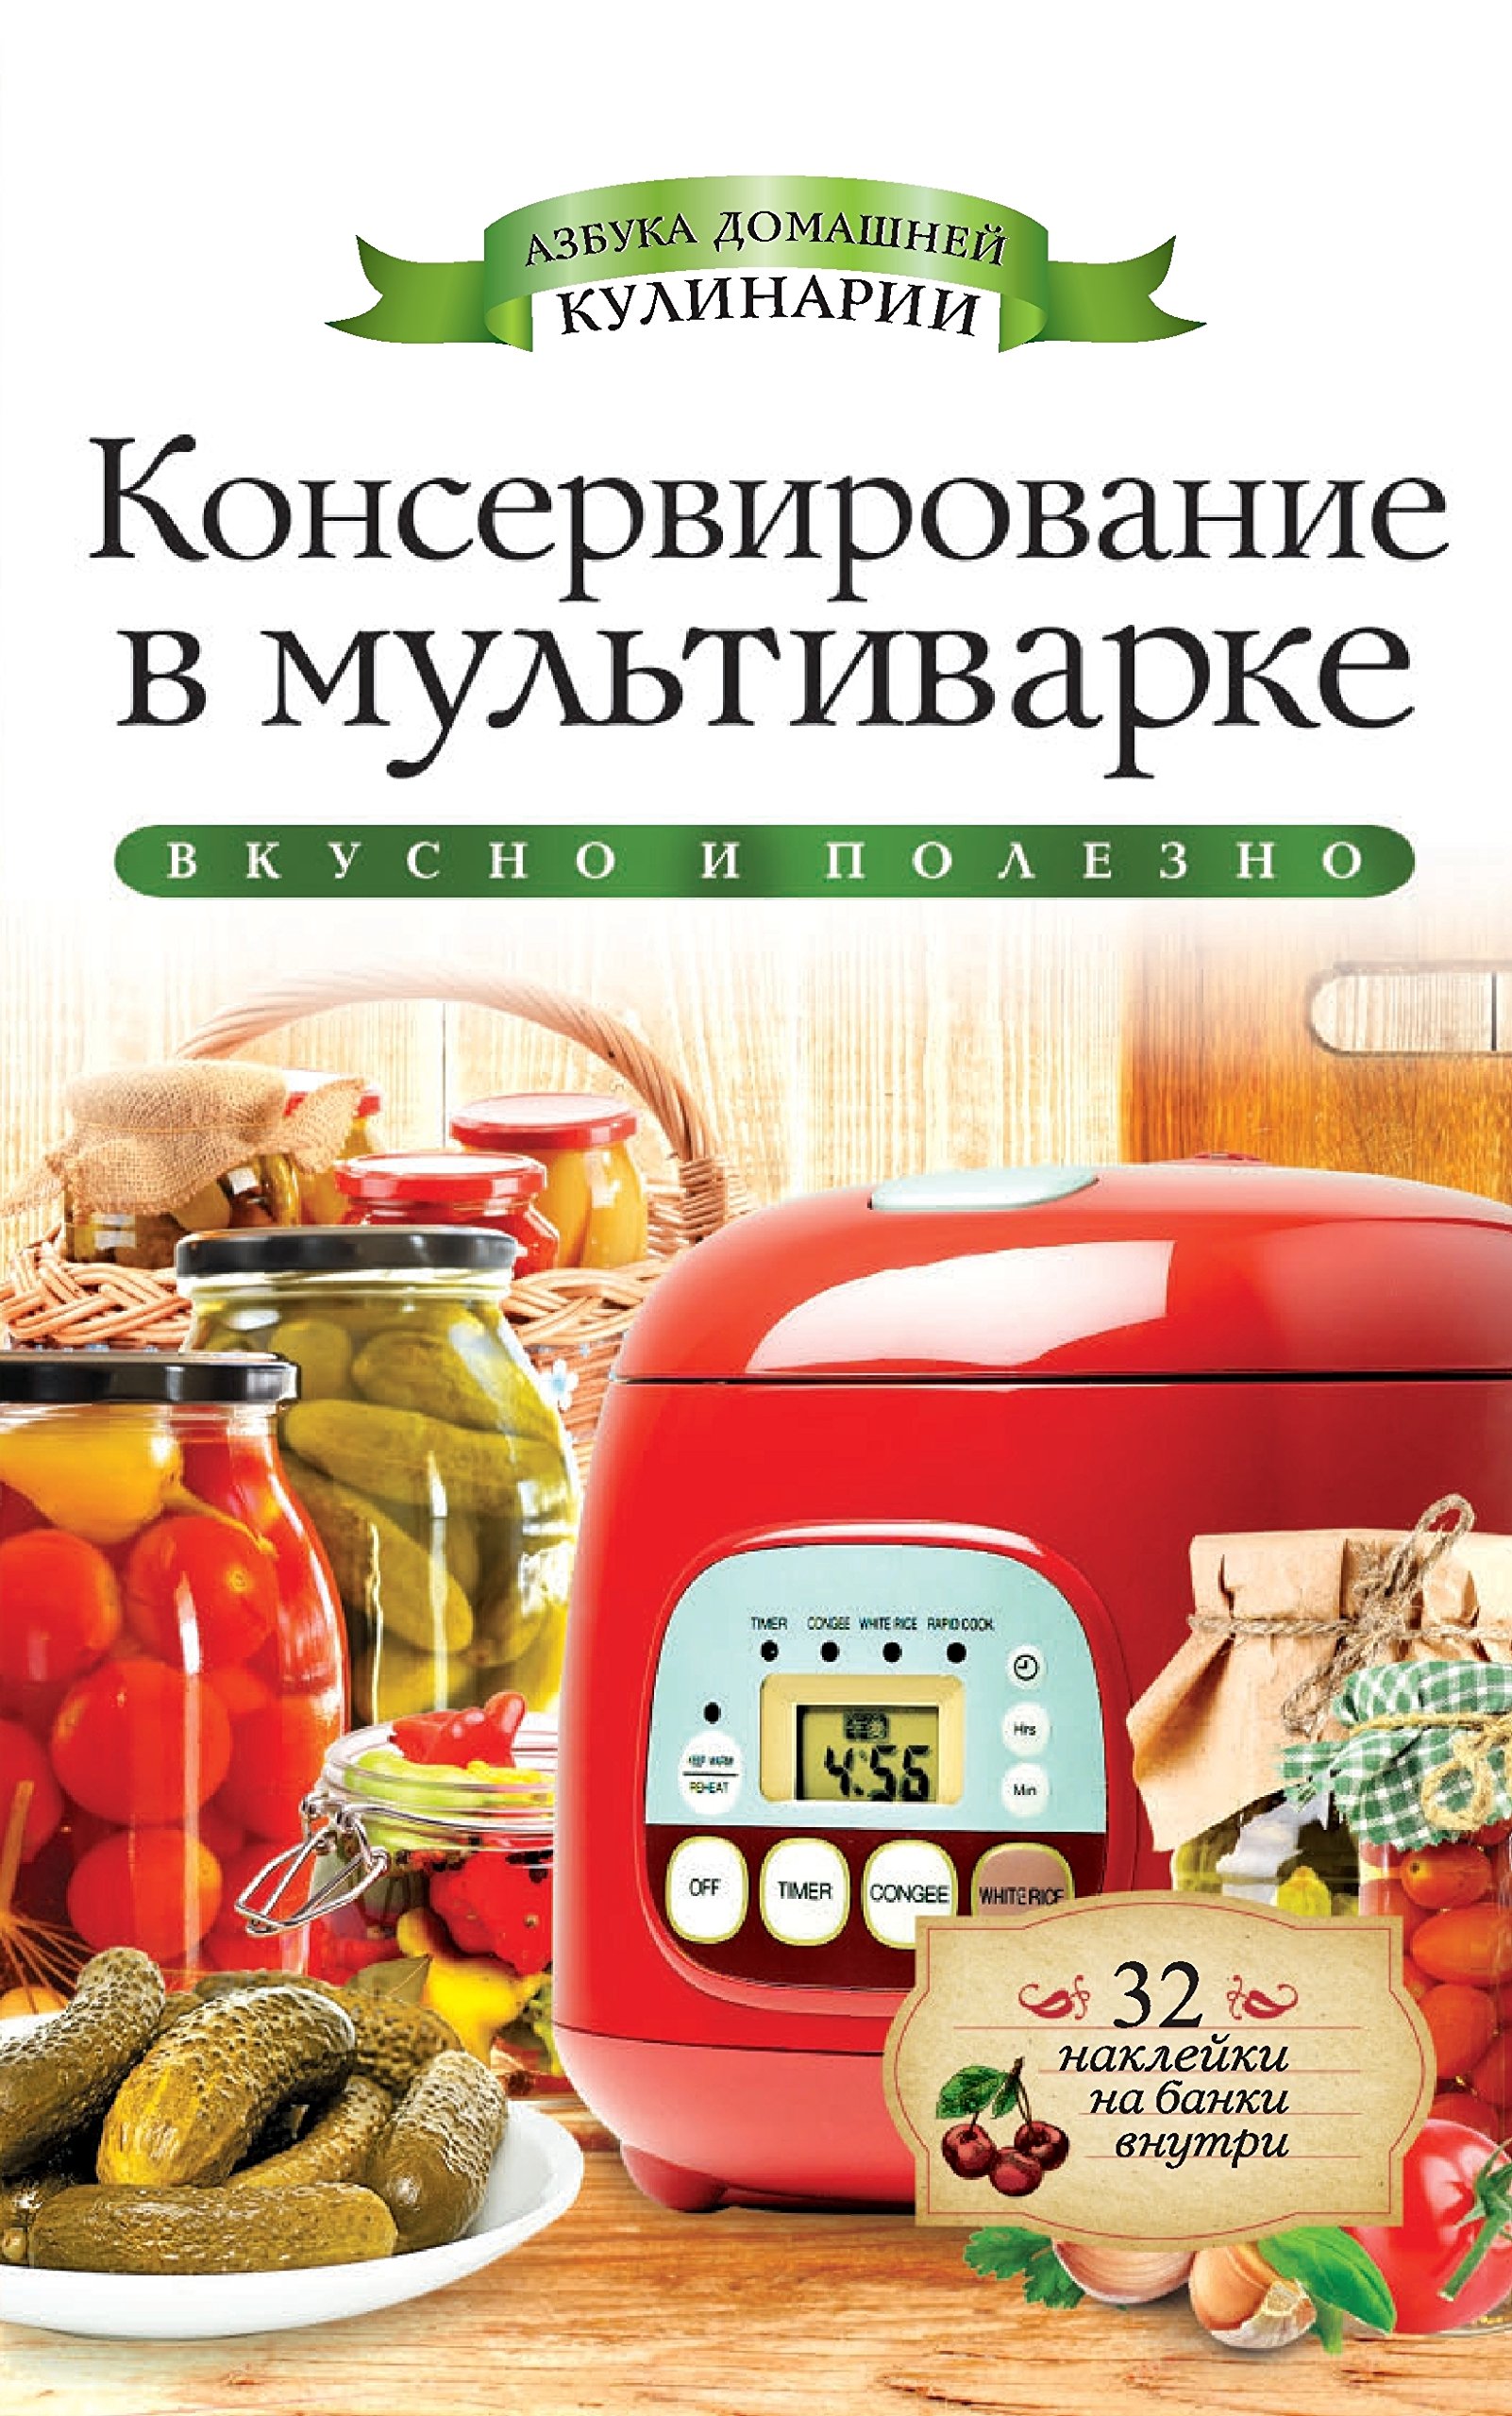 Консервирование в мультиварке (Russian Edition)